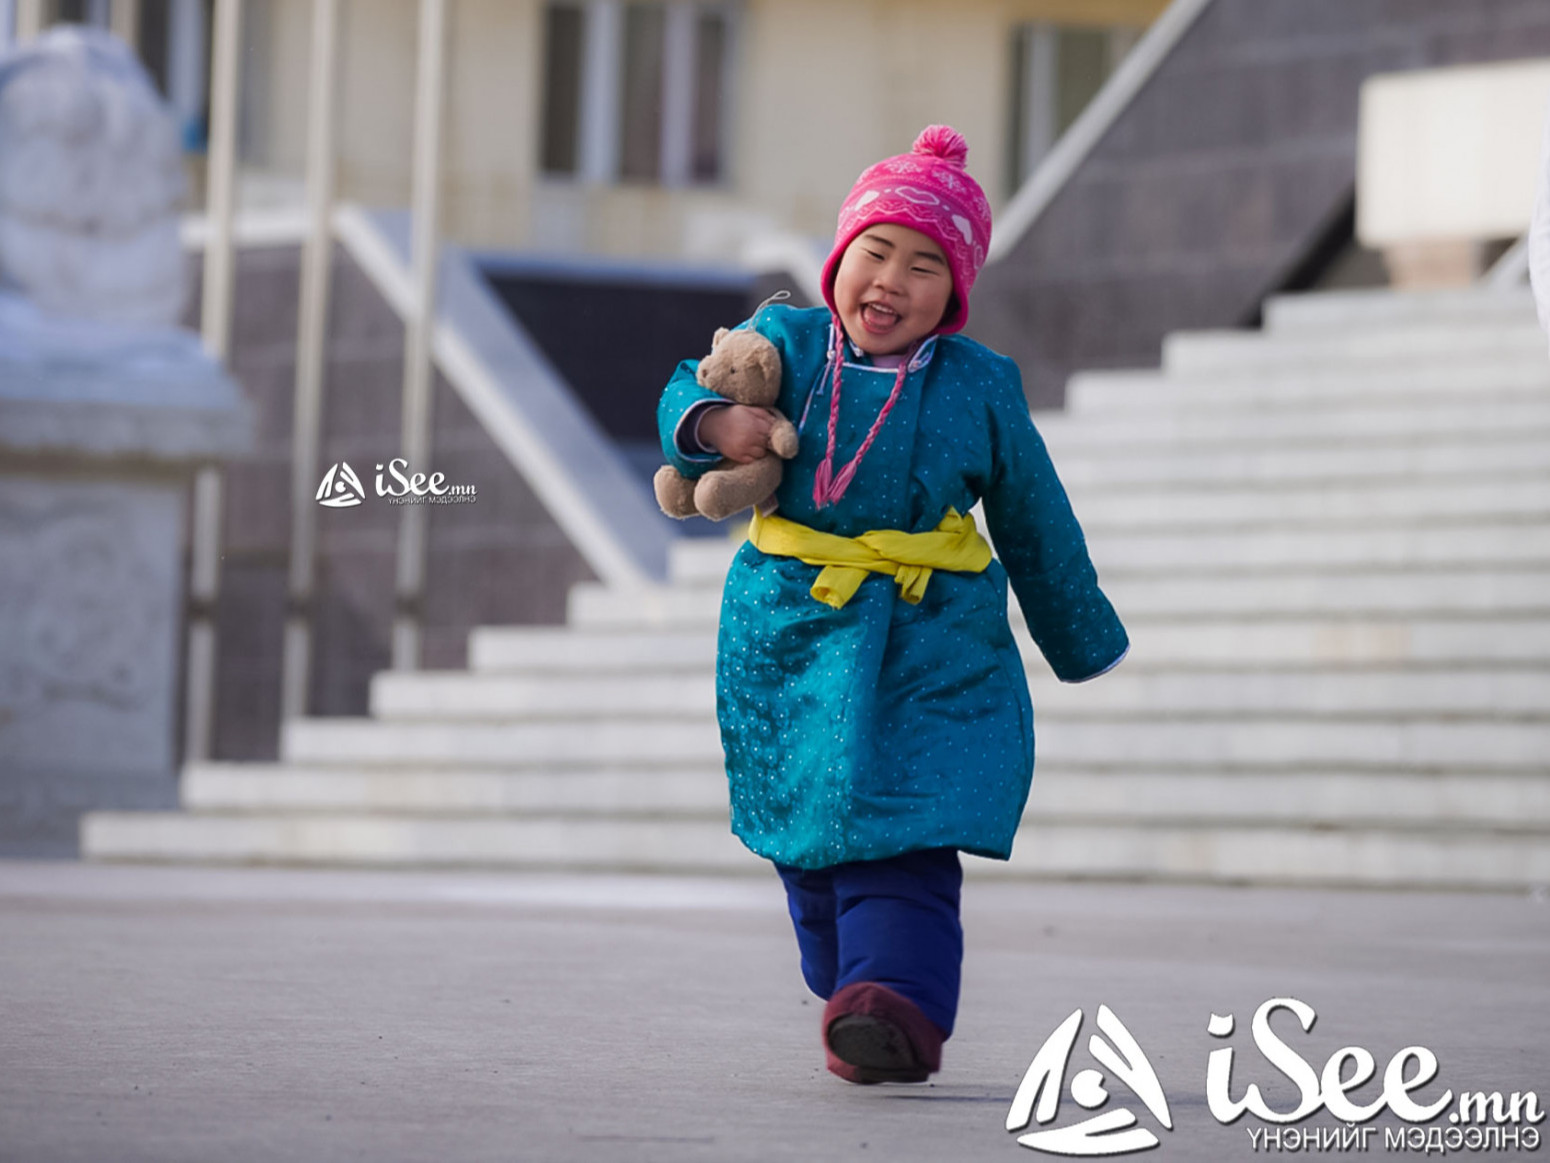 Азийн хамгийн аз жаргалтай 10 орны тоонд Монгол Улс багтжээ